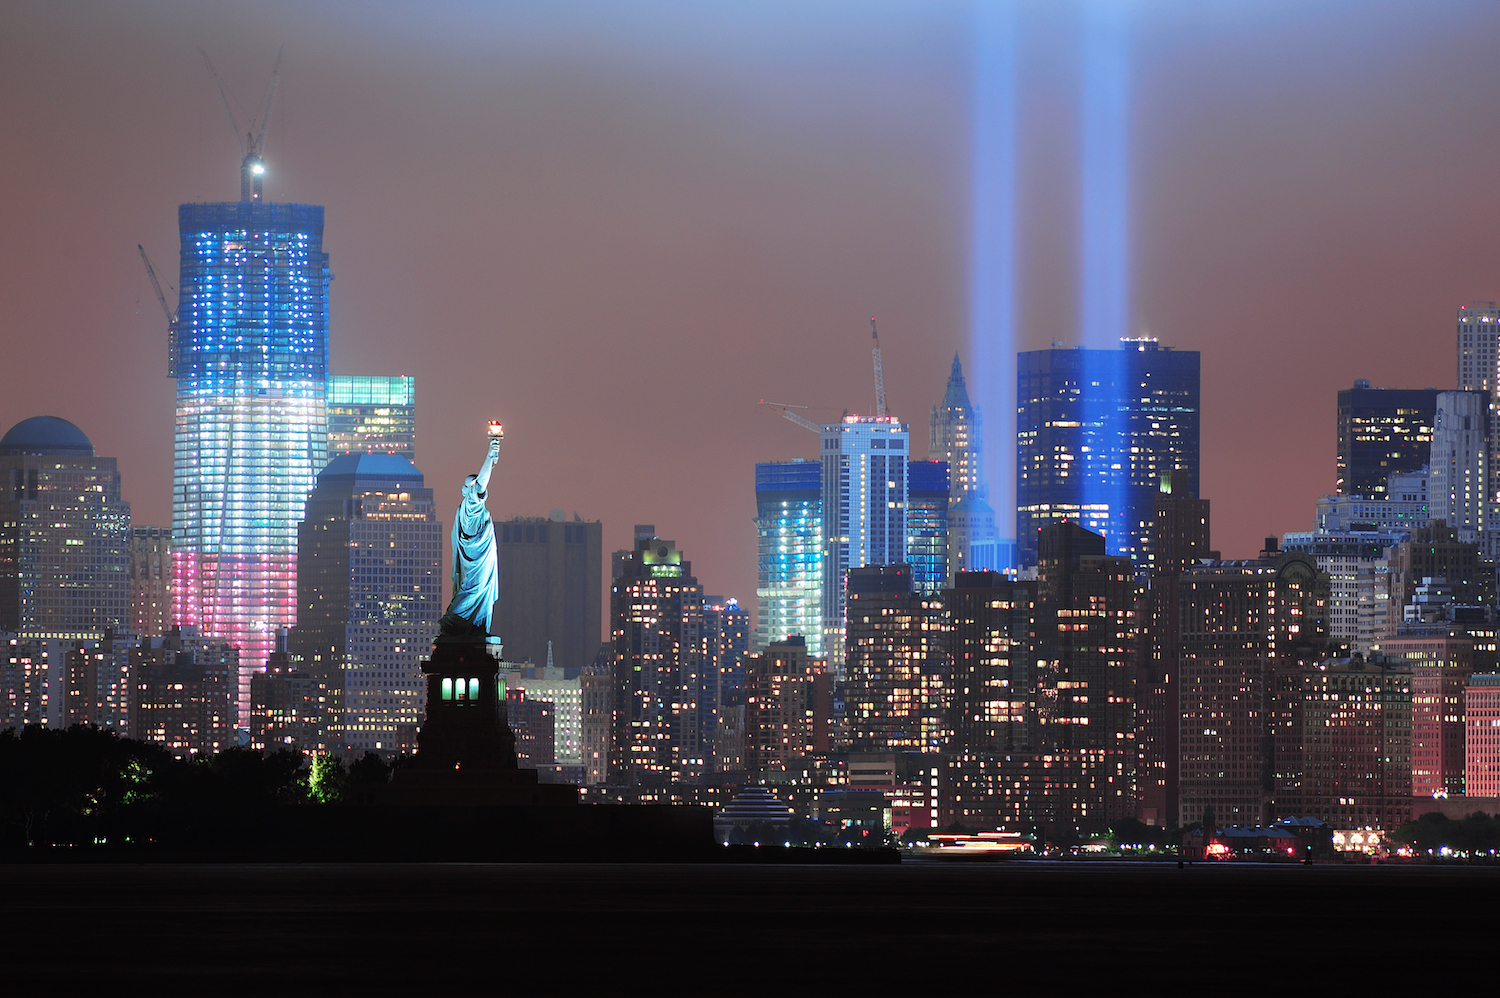 September 11 Tribute